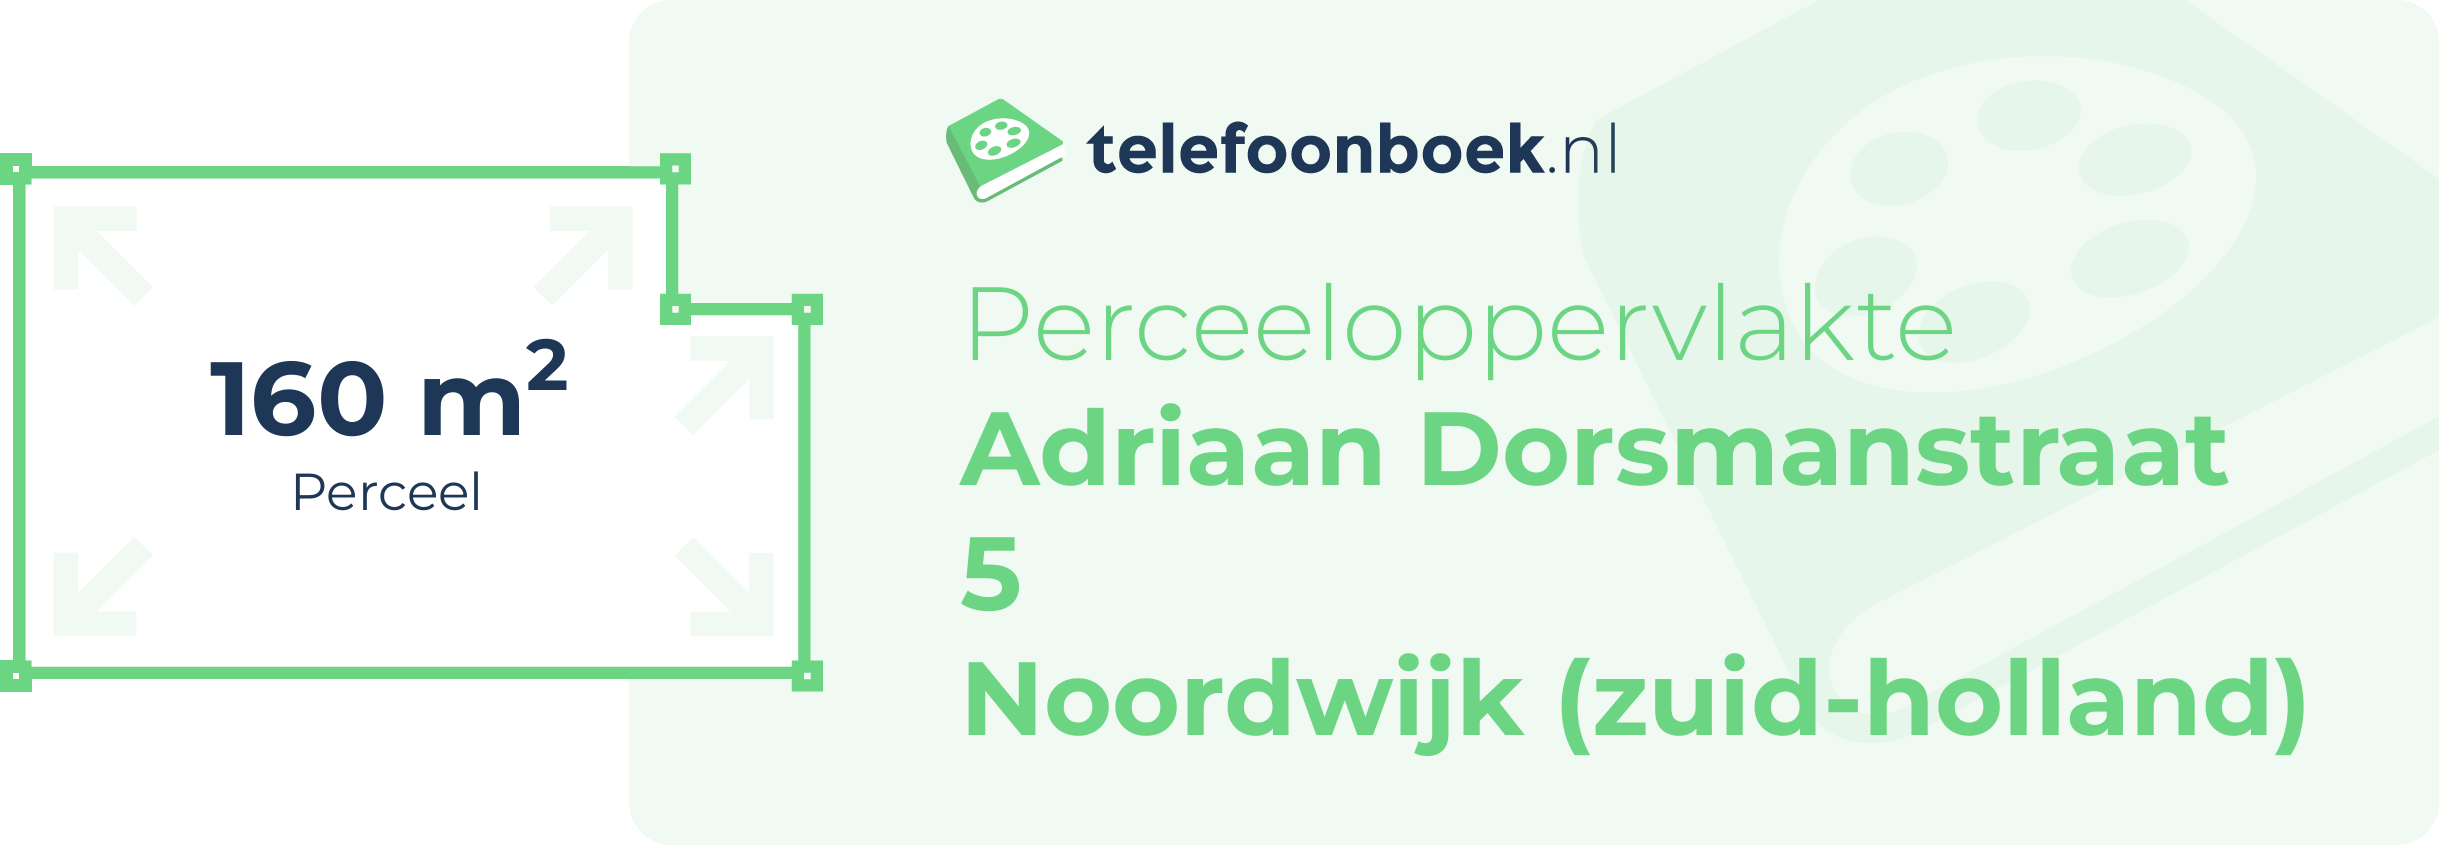 Perceeloppervlakte Adriaan Dorsmanstraat 5 Noordwijk (Zuid-Holland)